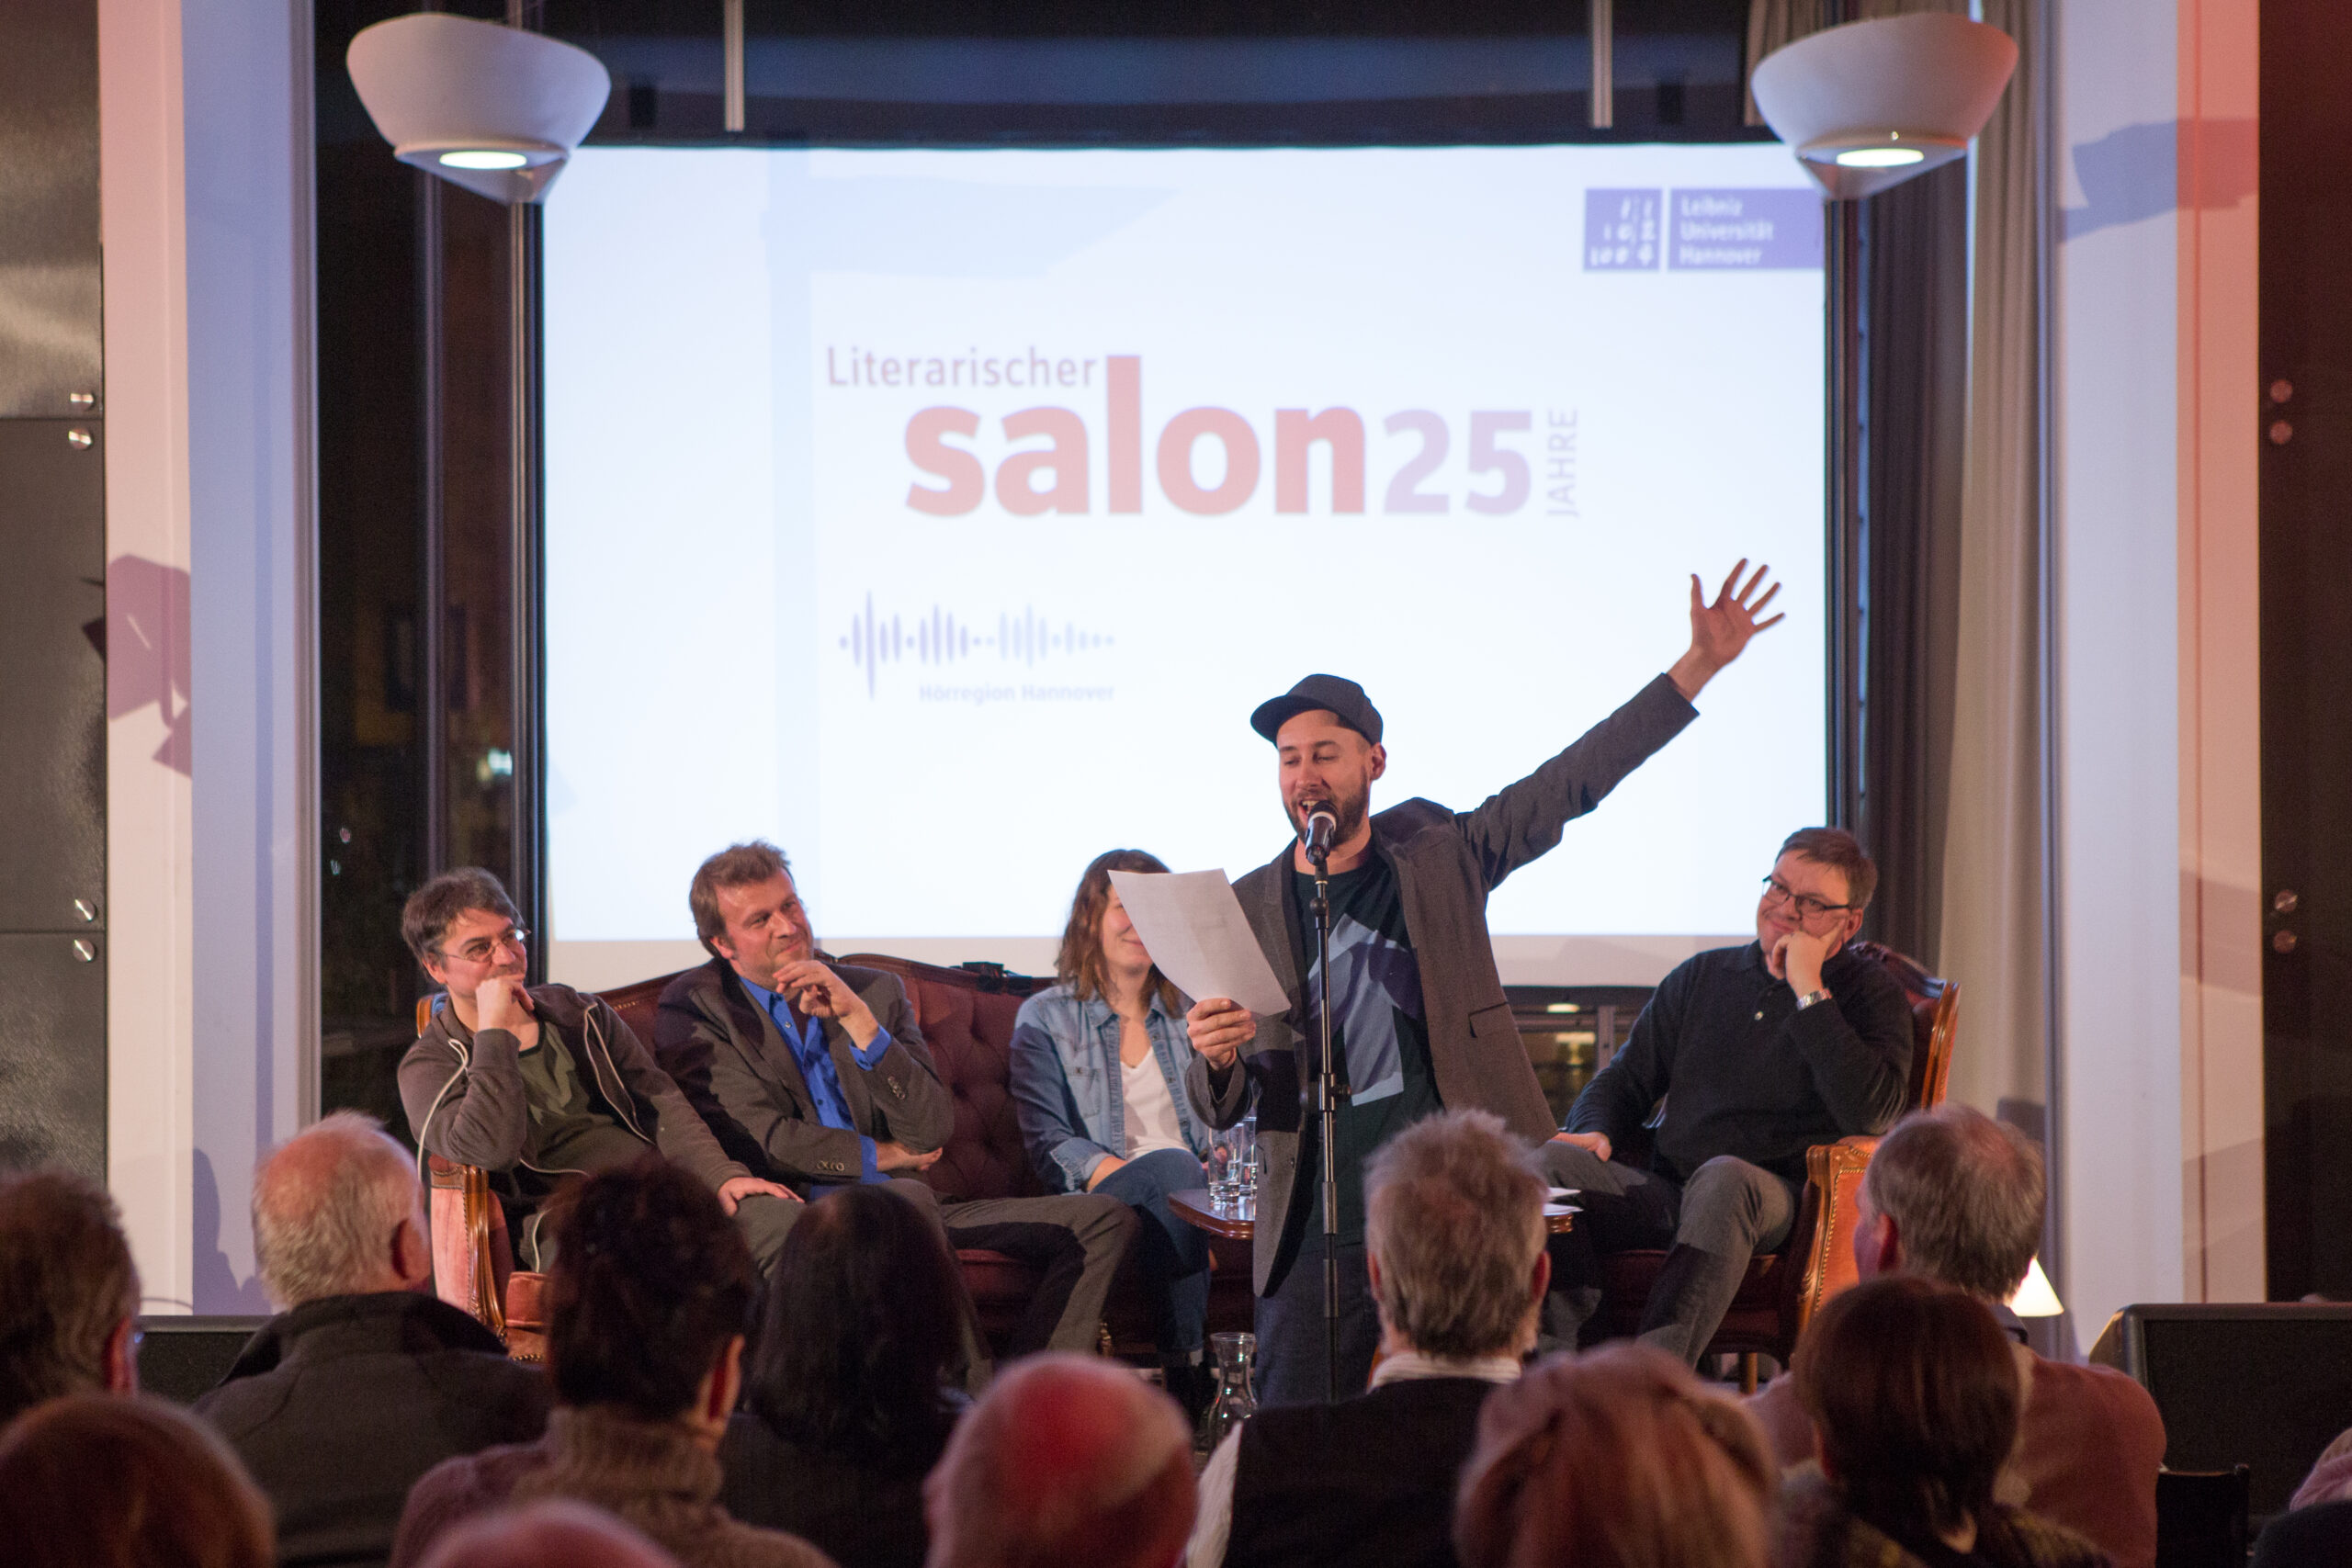 25 Jahre Literarischer Salon: Jubiläumswochenende – Bericht aus Hannover